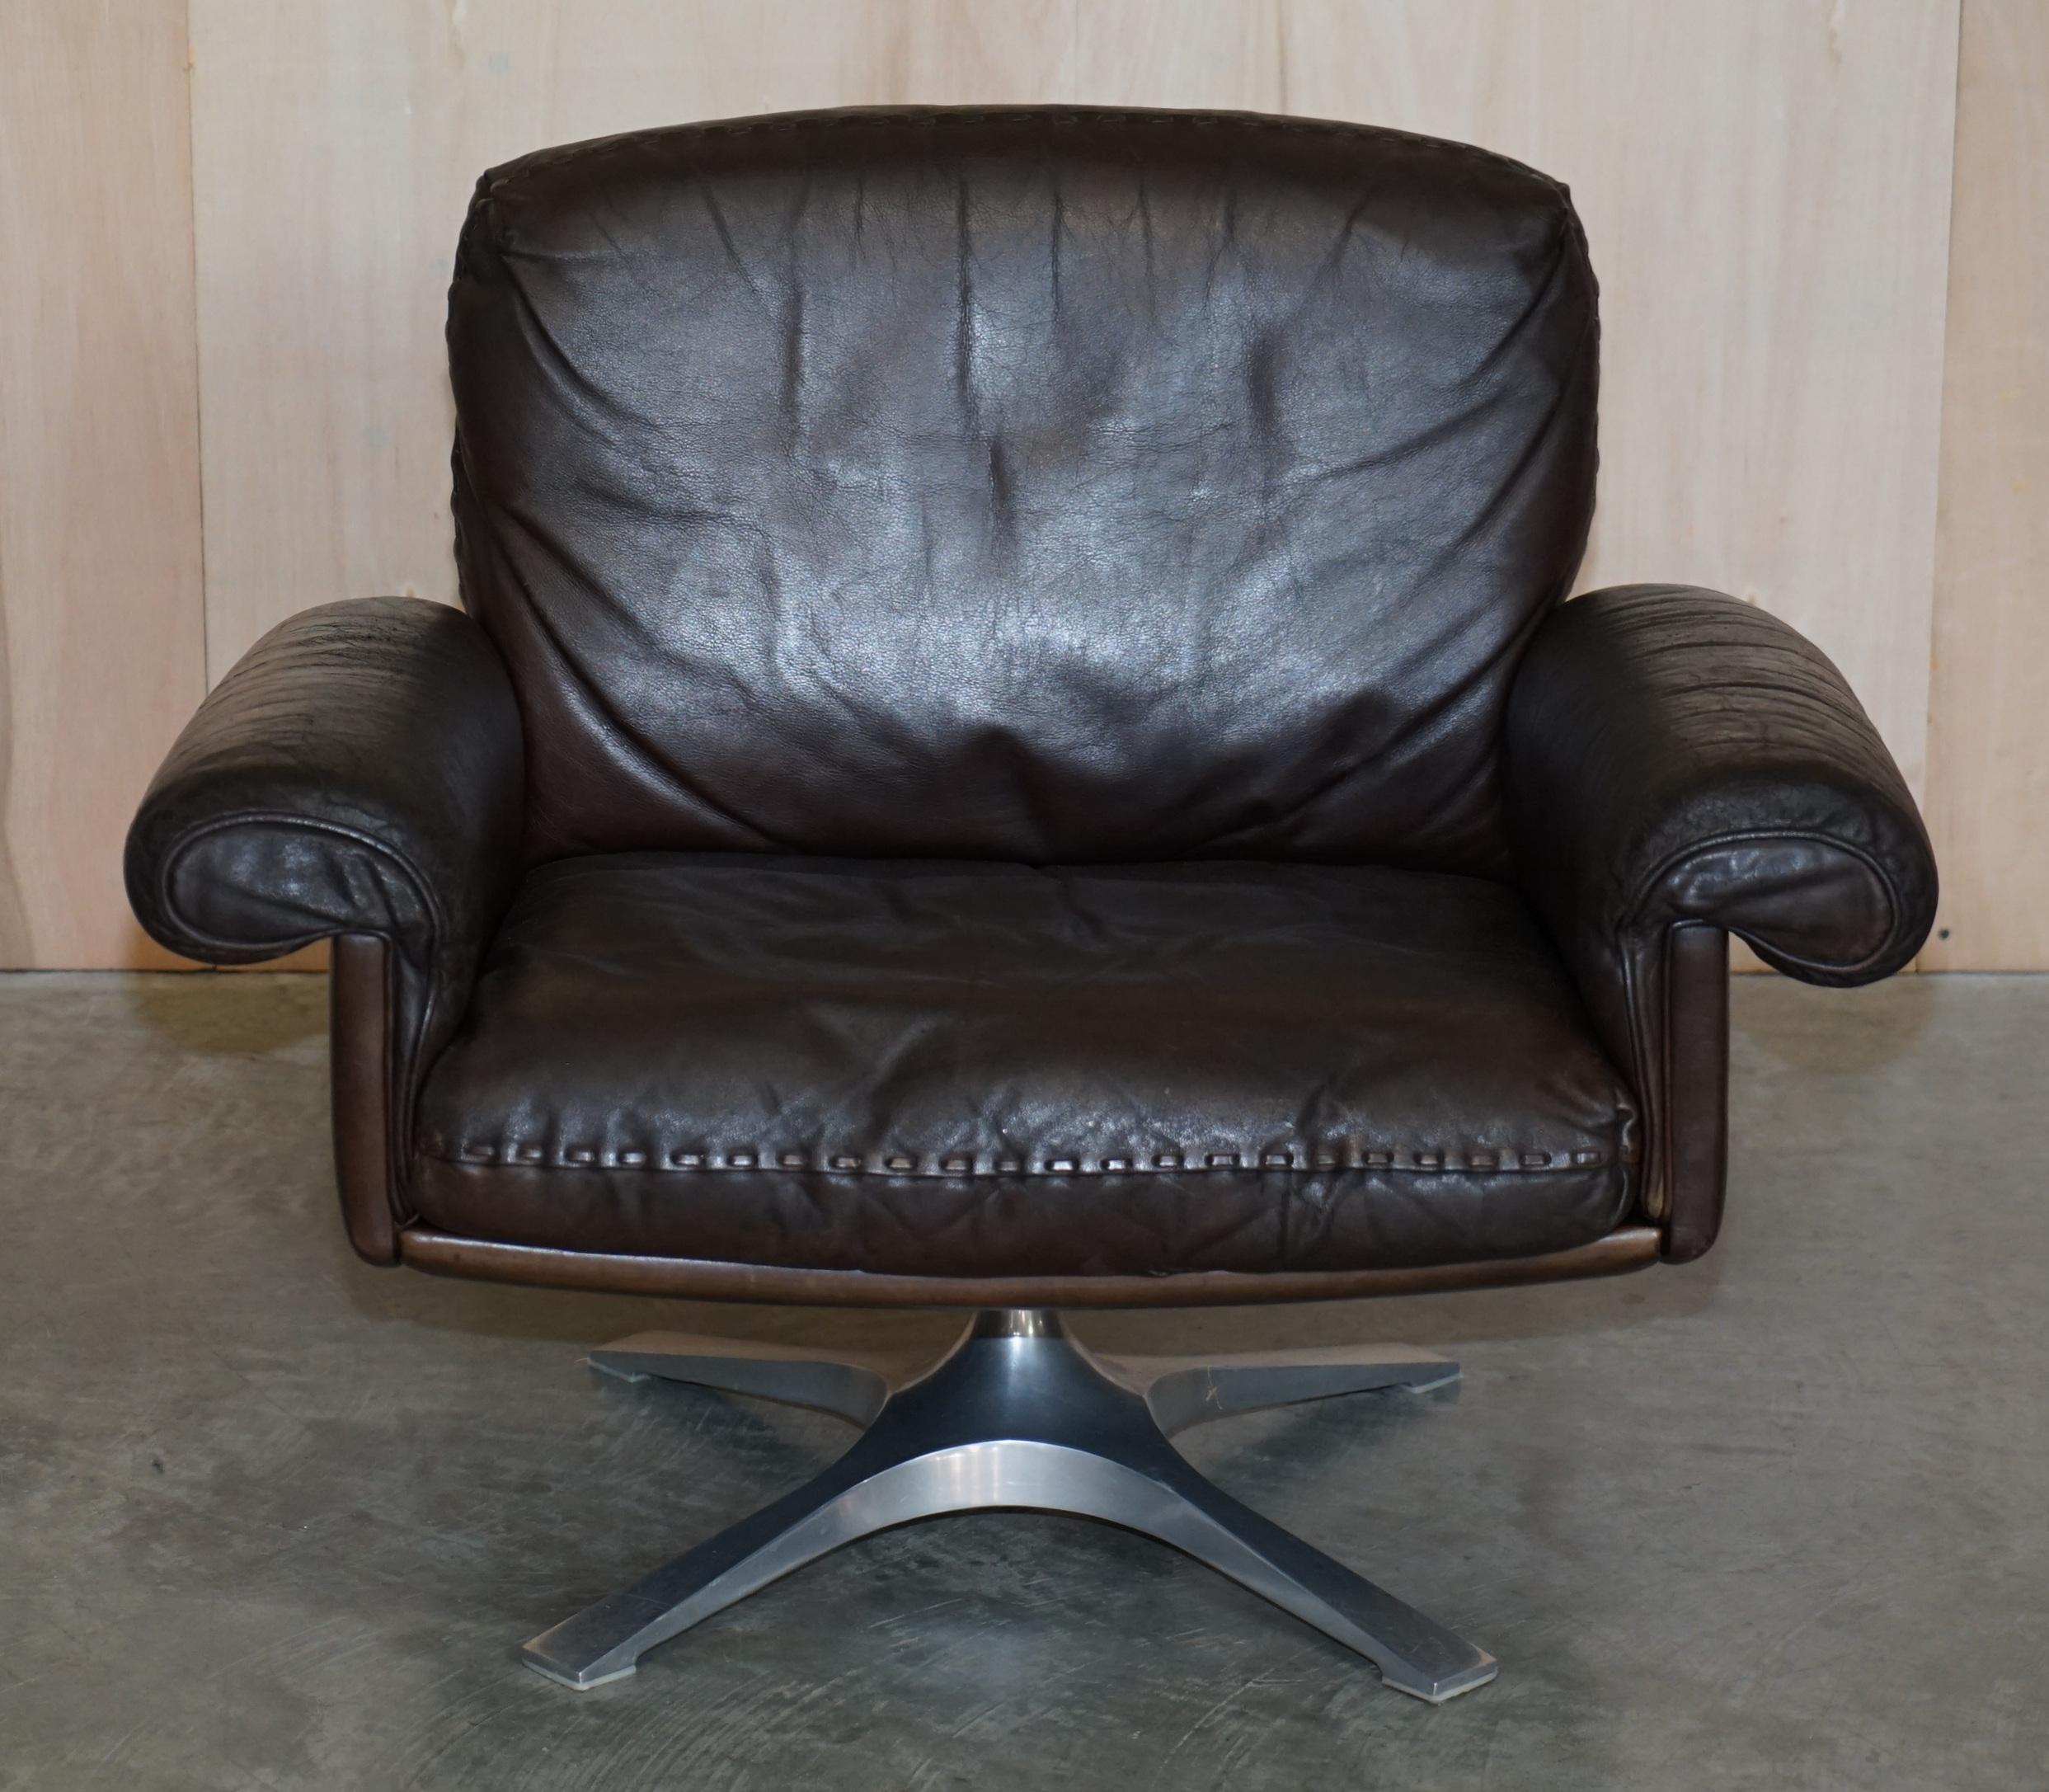 Nous sommes ravis d'offrir à la vente ce magnifique fauteuil pivotant De Sede DS-35, datant du milieu du siècle dernier et des années 1960, avec sa base prototype.

Un fauteuil vraiment emblématique et super confortable fabriqué par les gourous du